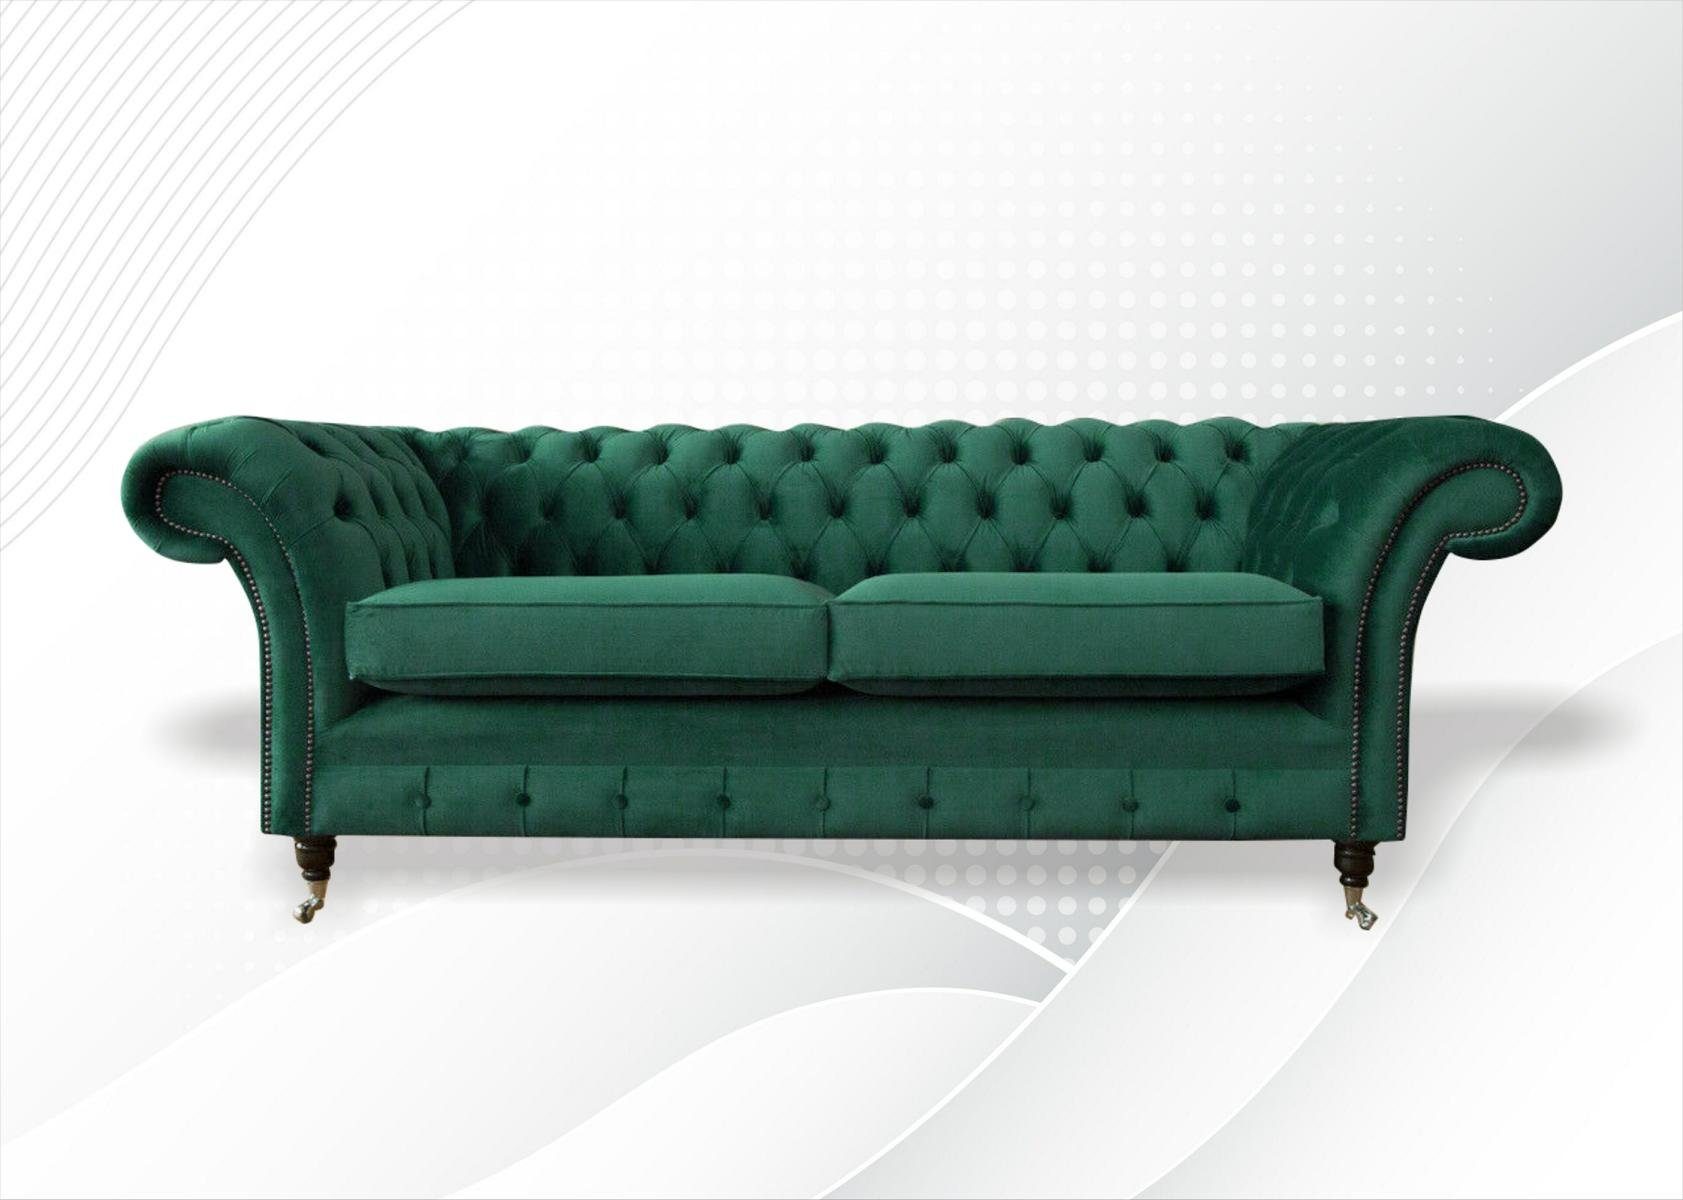 JVmoebel Chesterfield-Sofa Moderner grüner Dreisitzer Luxus Möbel 3-er Neu Polstermöbel, Made in Europe